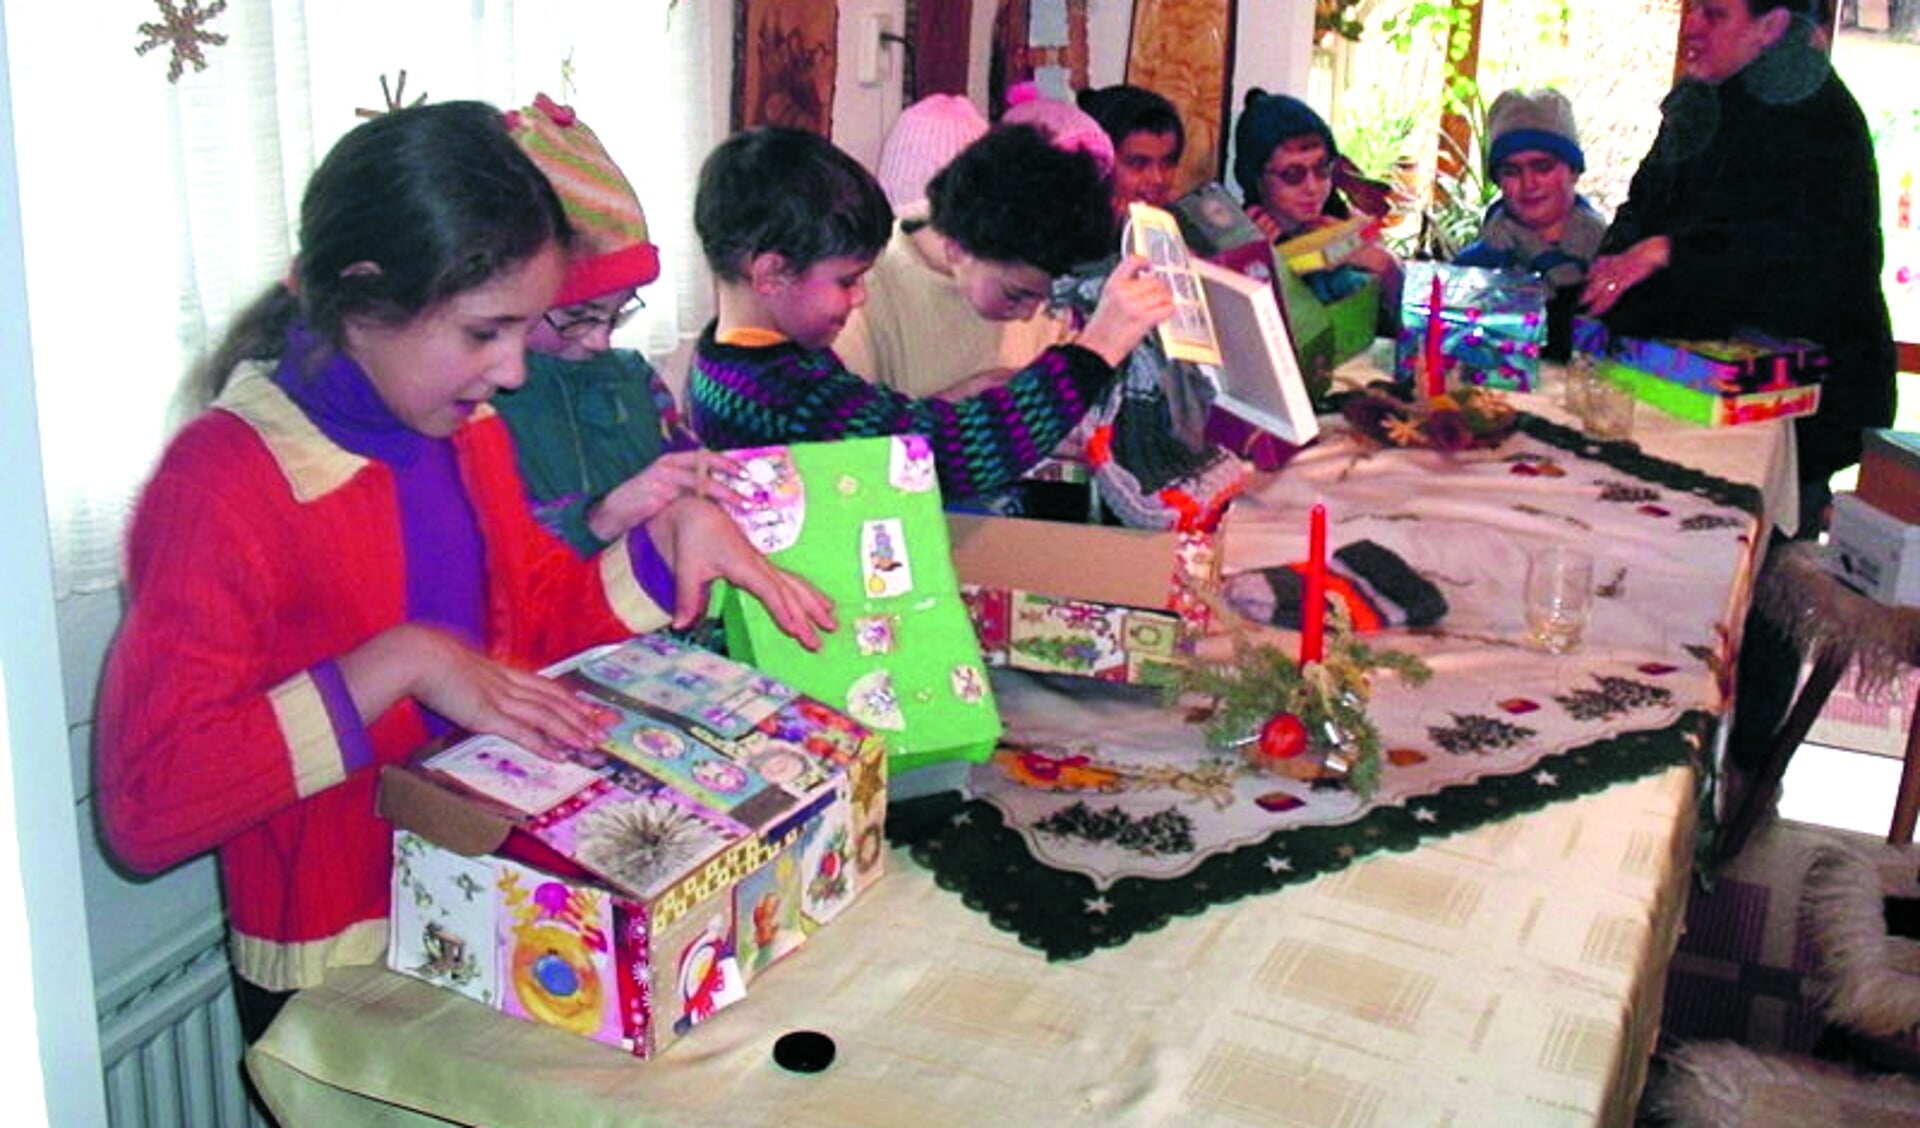 De kinderen in Roemenïe worden wederom verblijd met leuke cadeautjes in schoenendozen. (Foto's: aangeleverd)